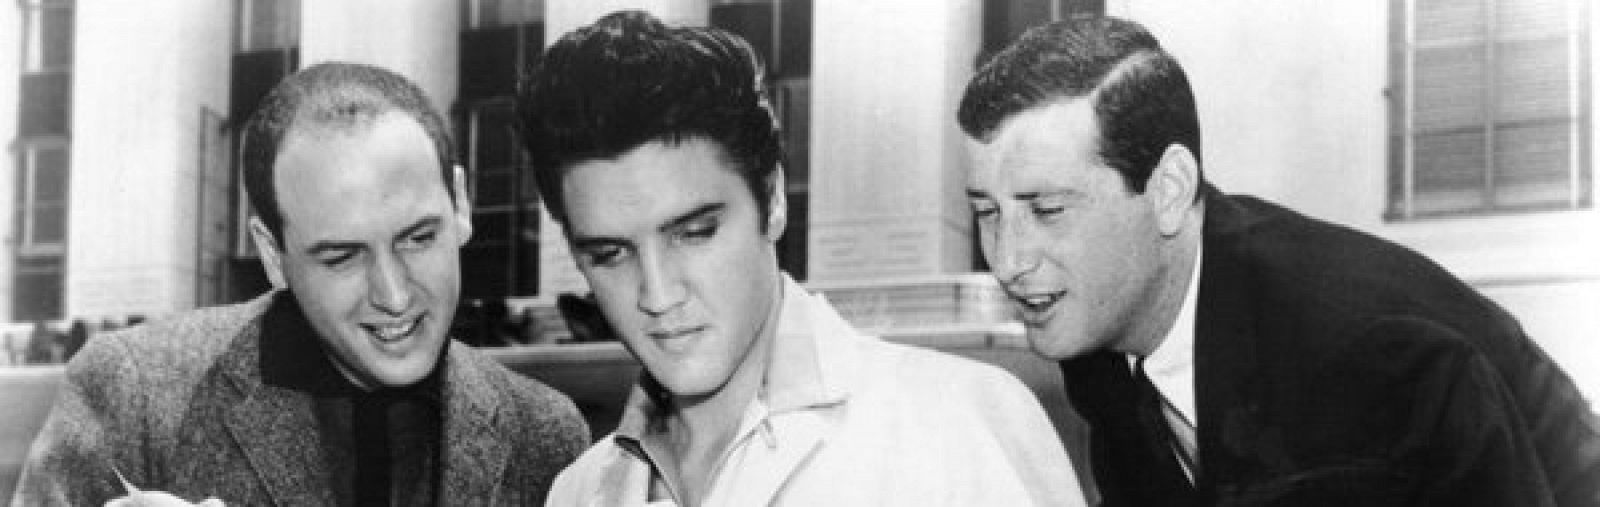 Mike Stoller, Elvis Presley y Jerry Leiber en una foto de archivo de 1957